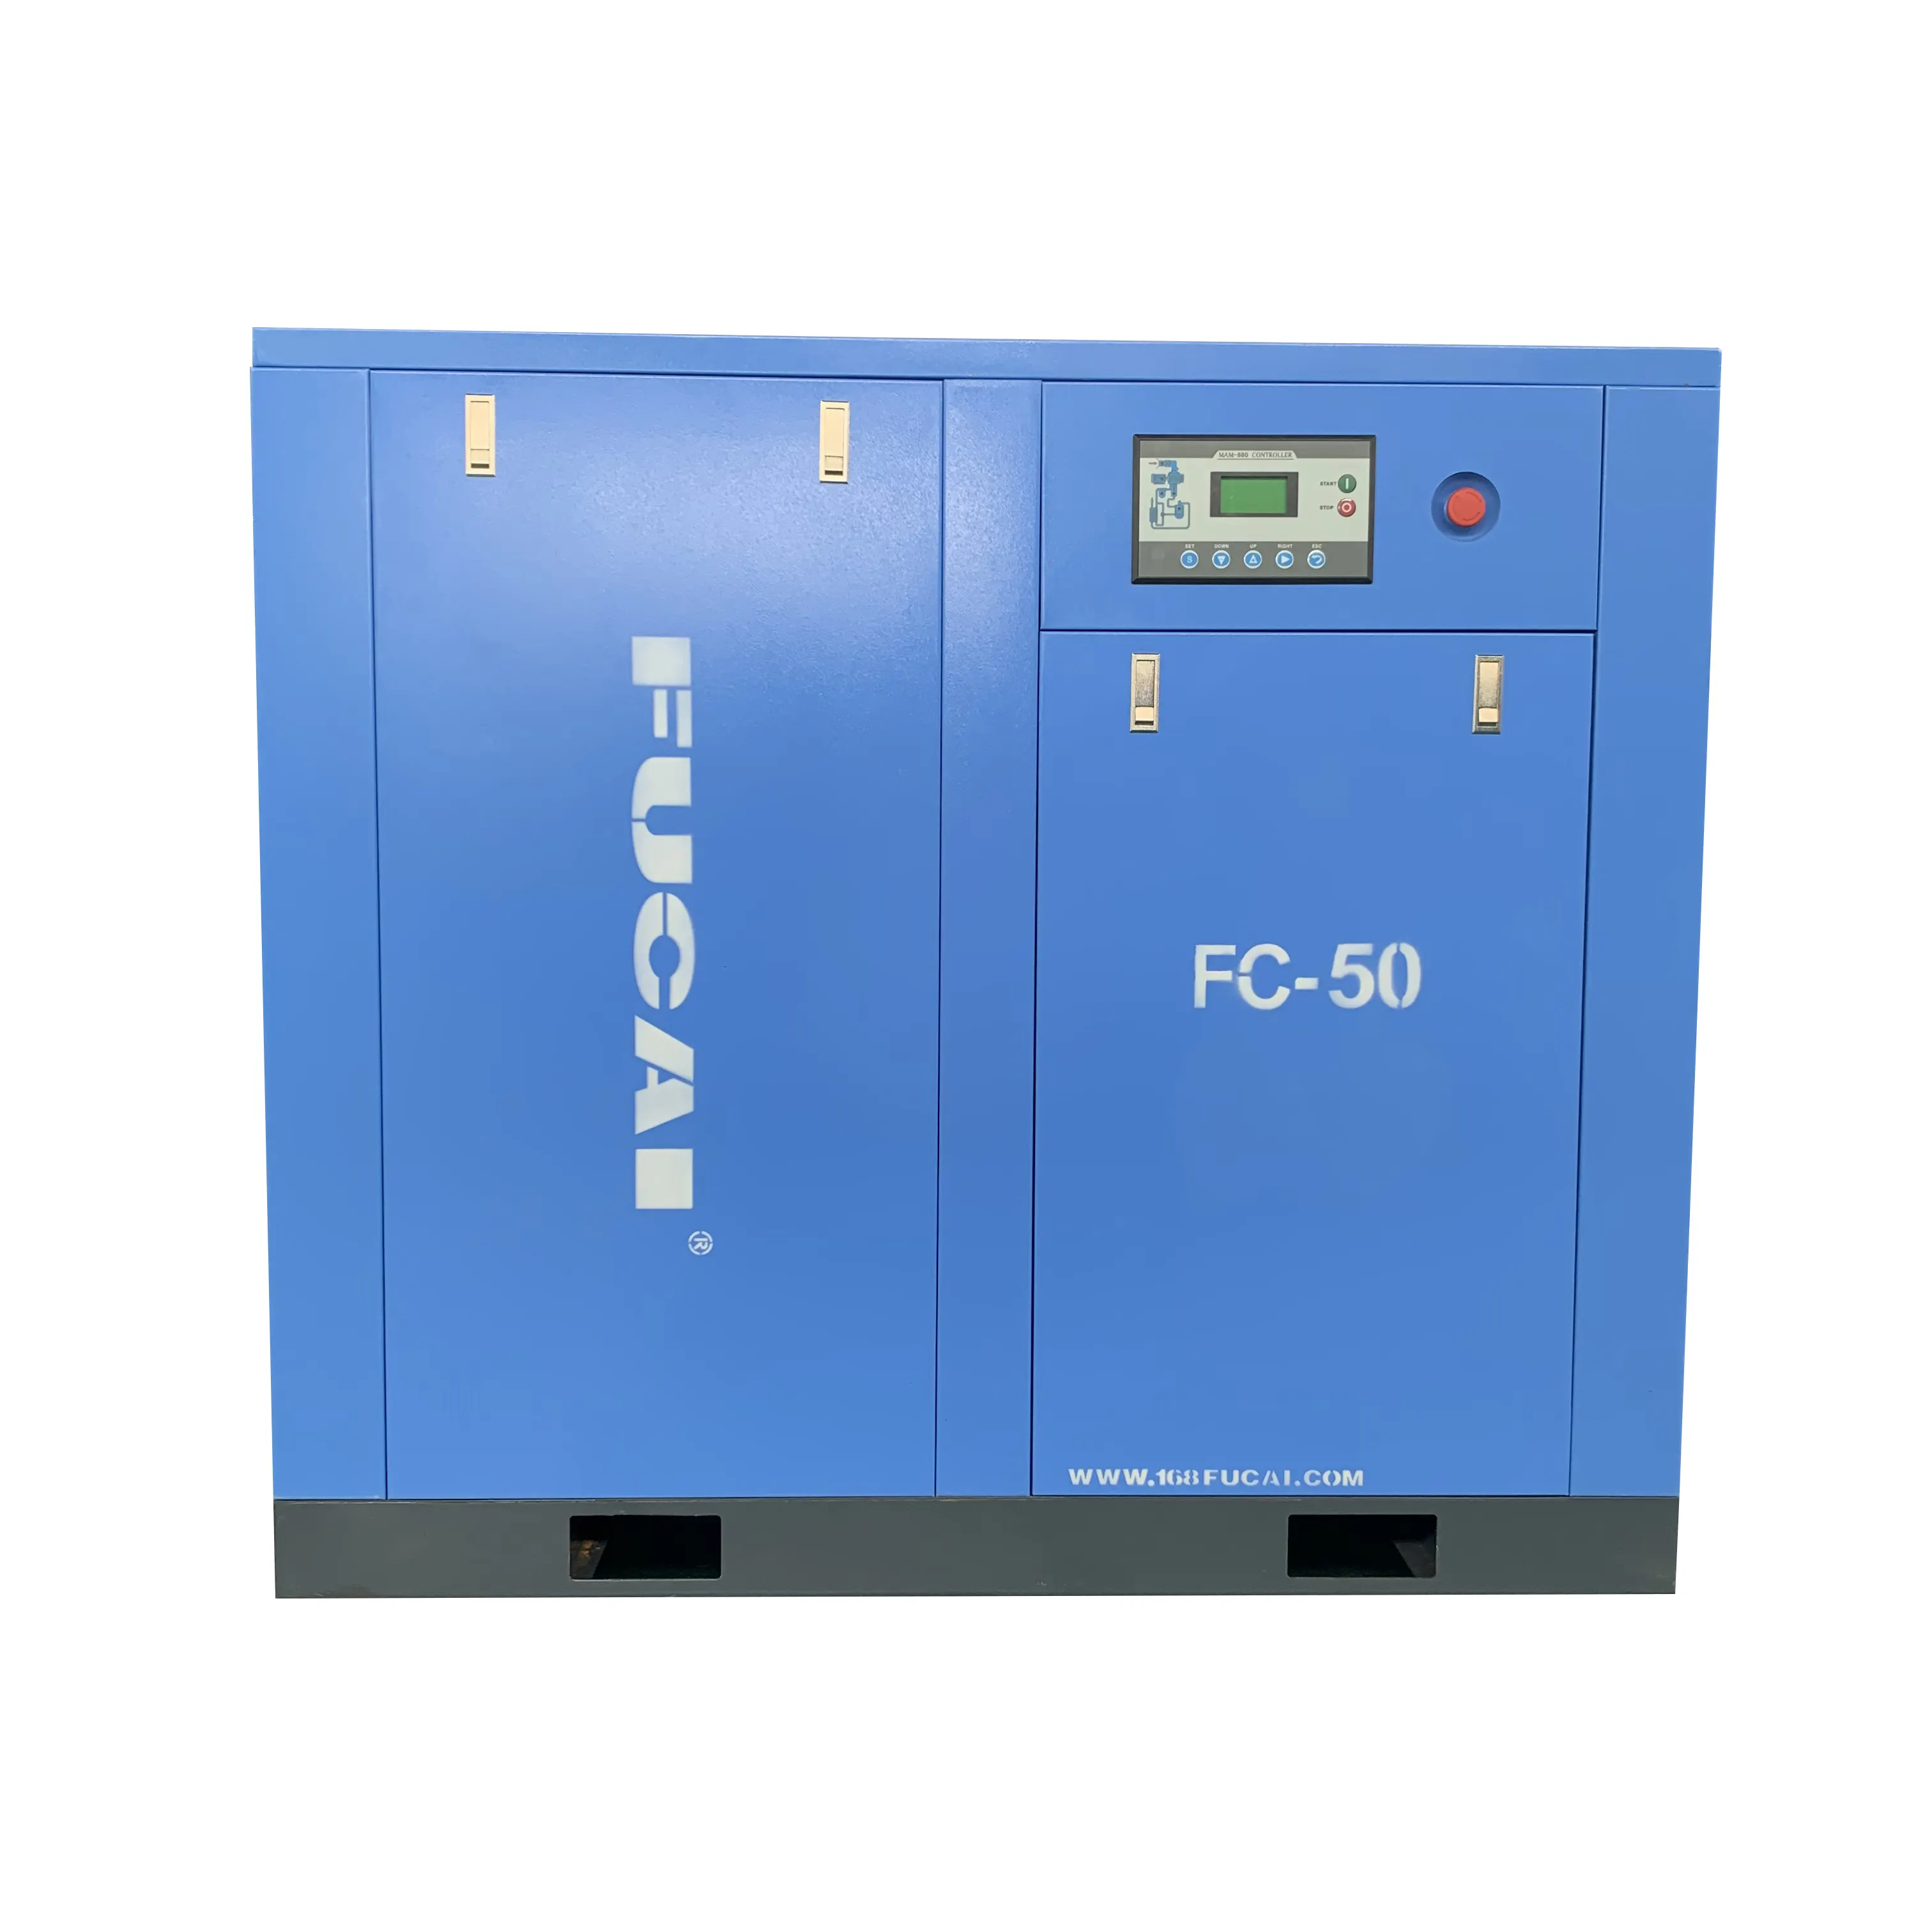 FUCAI Fabrik gut verkaufte Produkte 50 PS 37kW VSD Luftschraube kompressor niedriger Preis des Kompressors gute Qualität